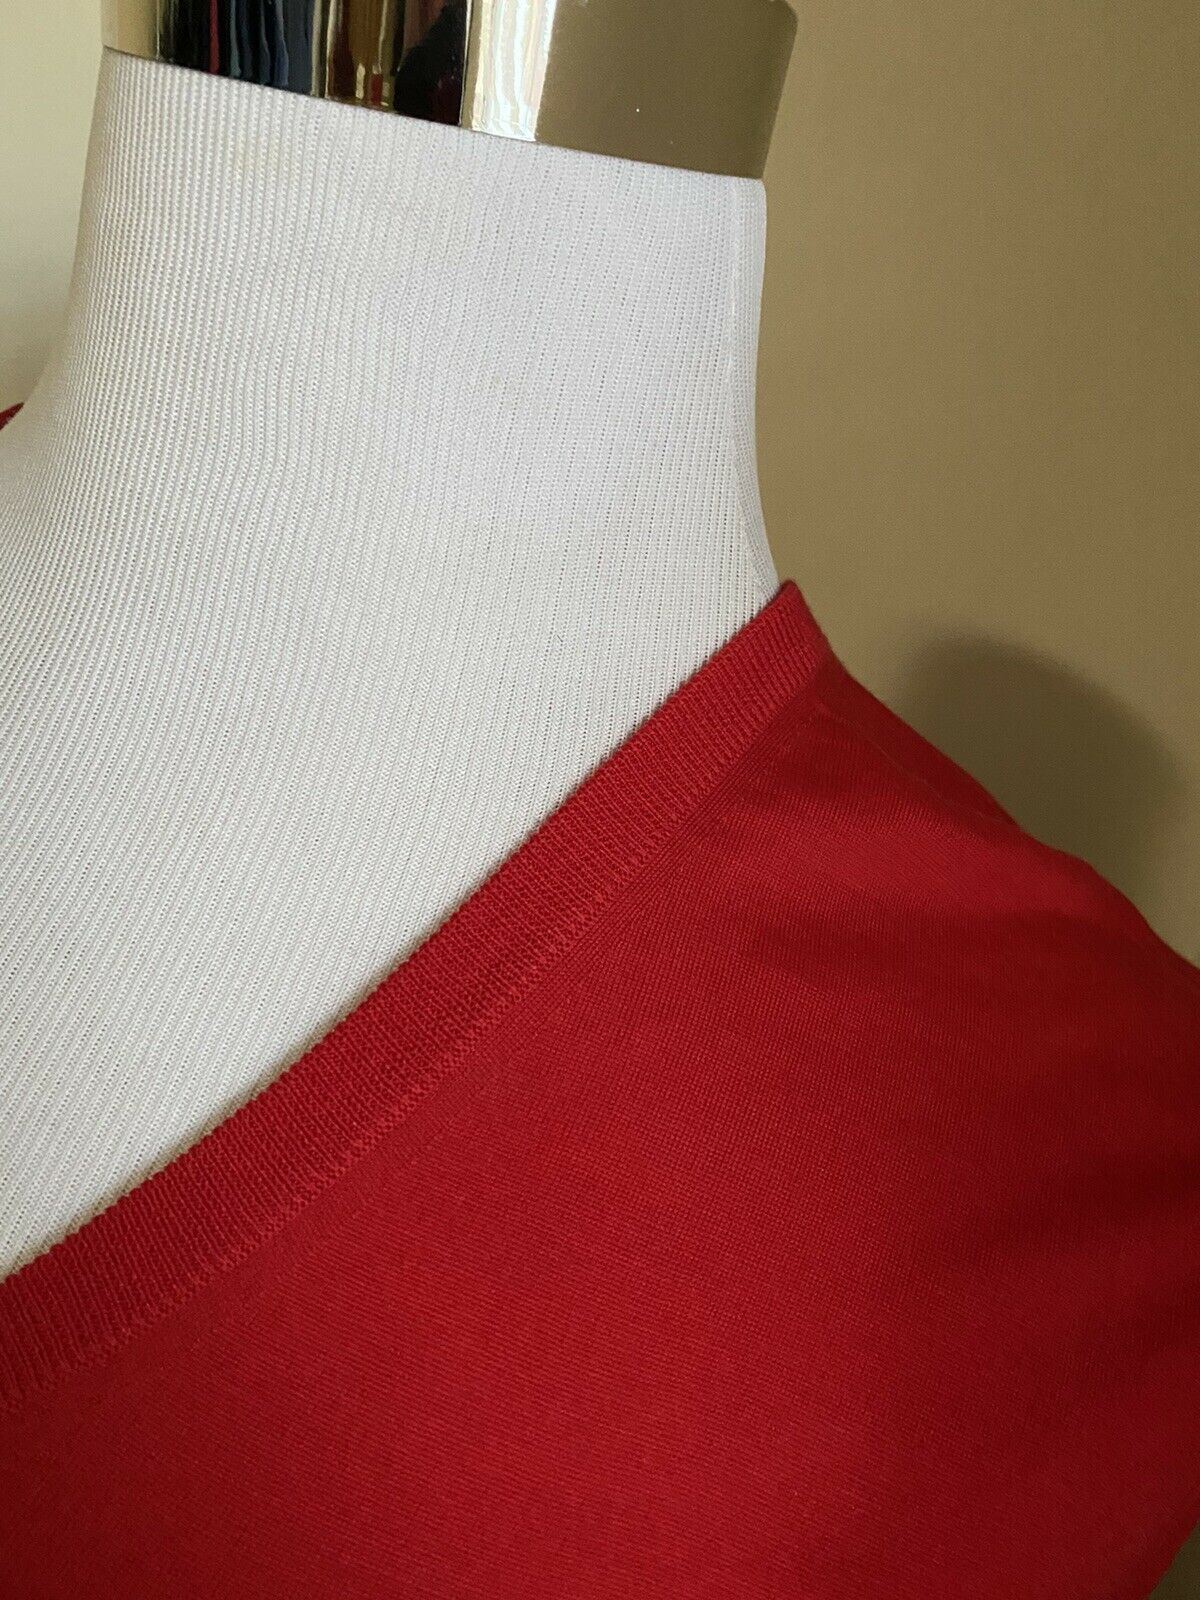 СЗТ $1200 Gucci Мужской шерстяной свитер с V-образным вырезом Красный Размер XL Италия